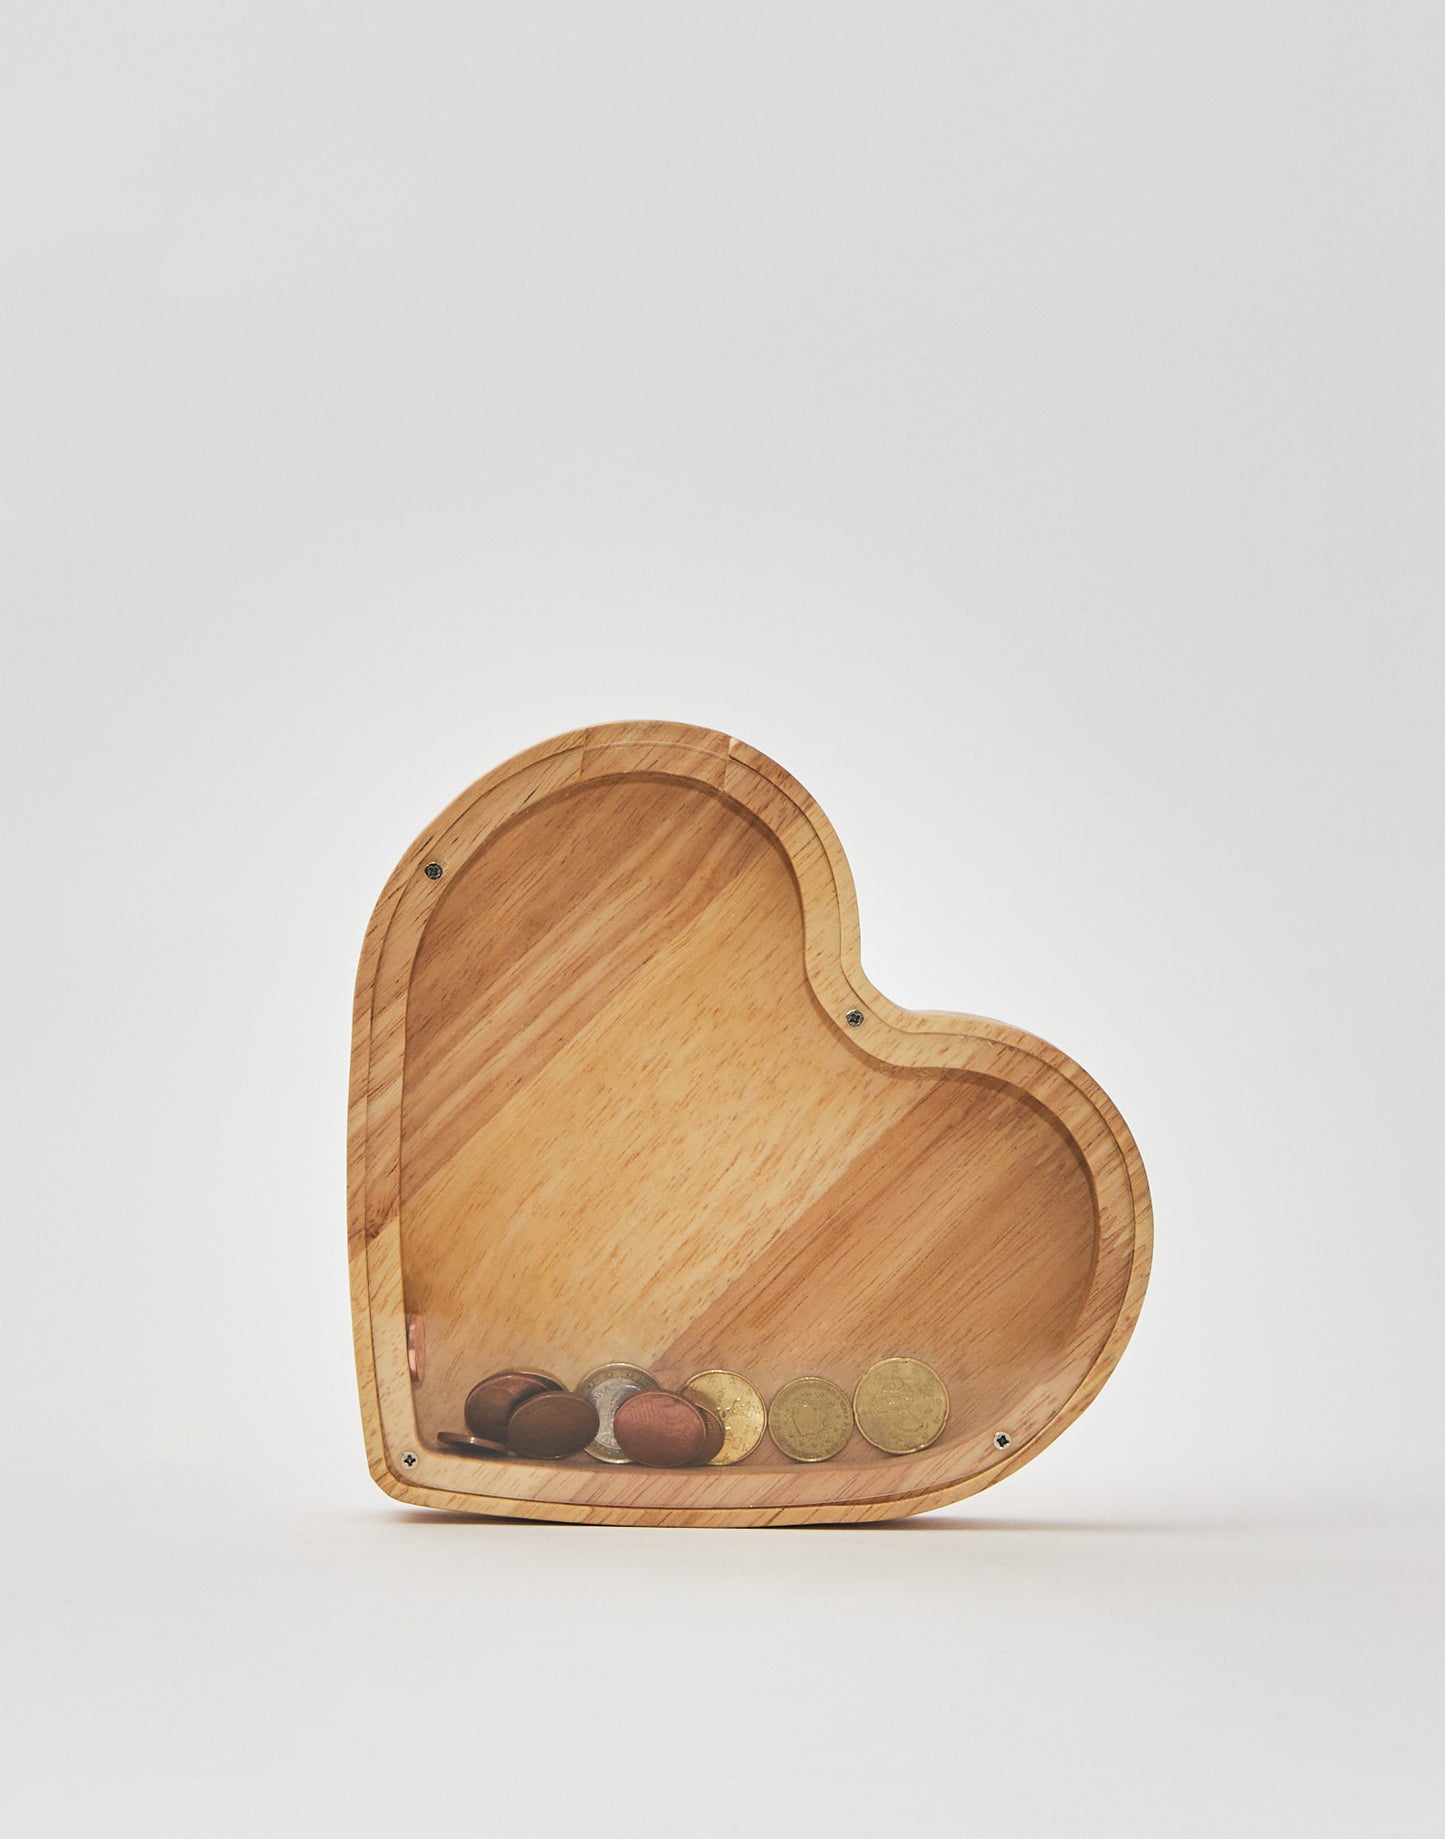 Heart-Shaped Money Box